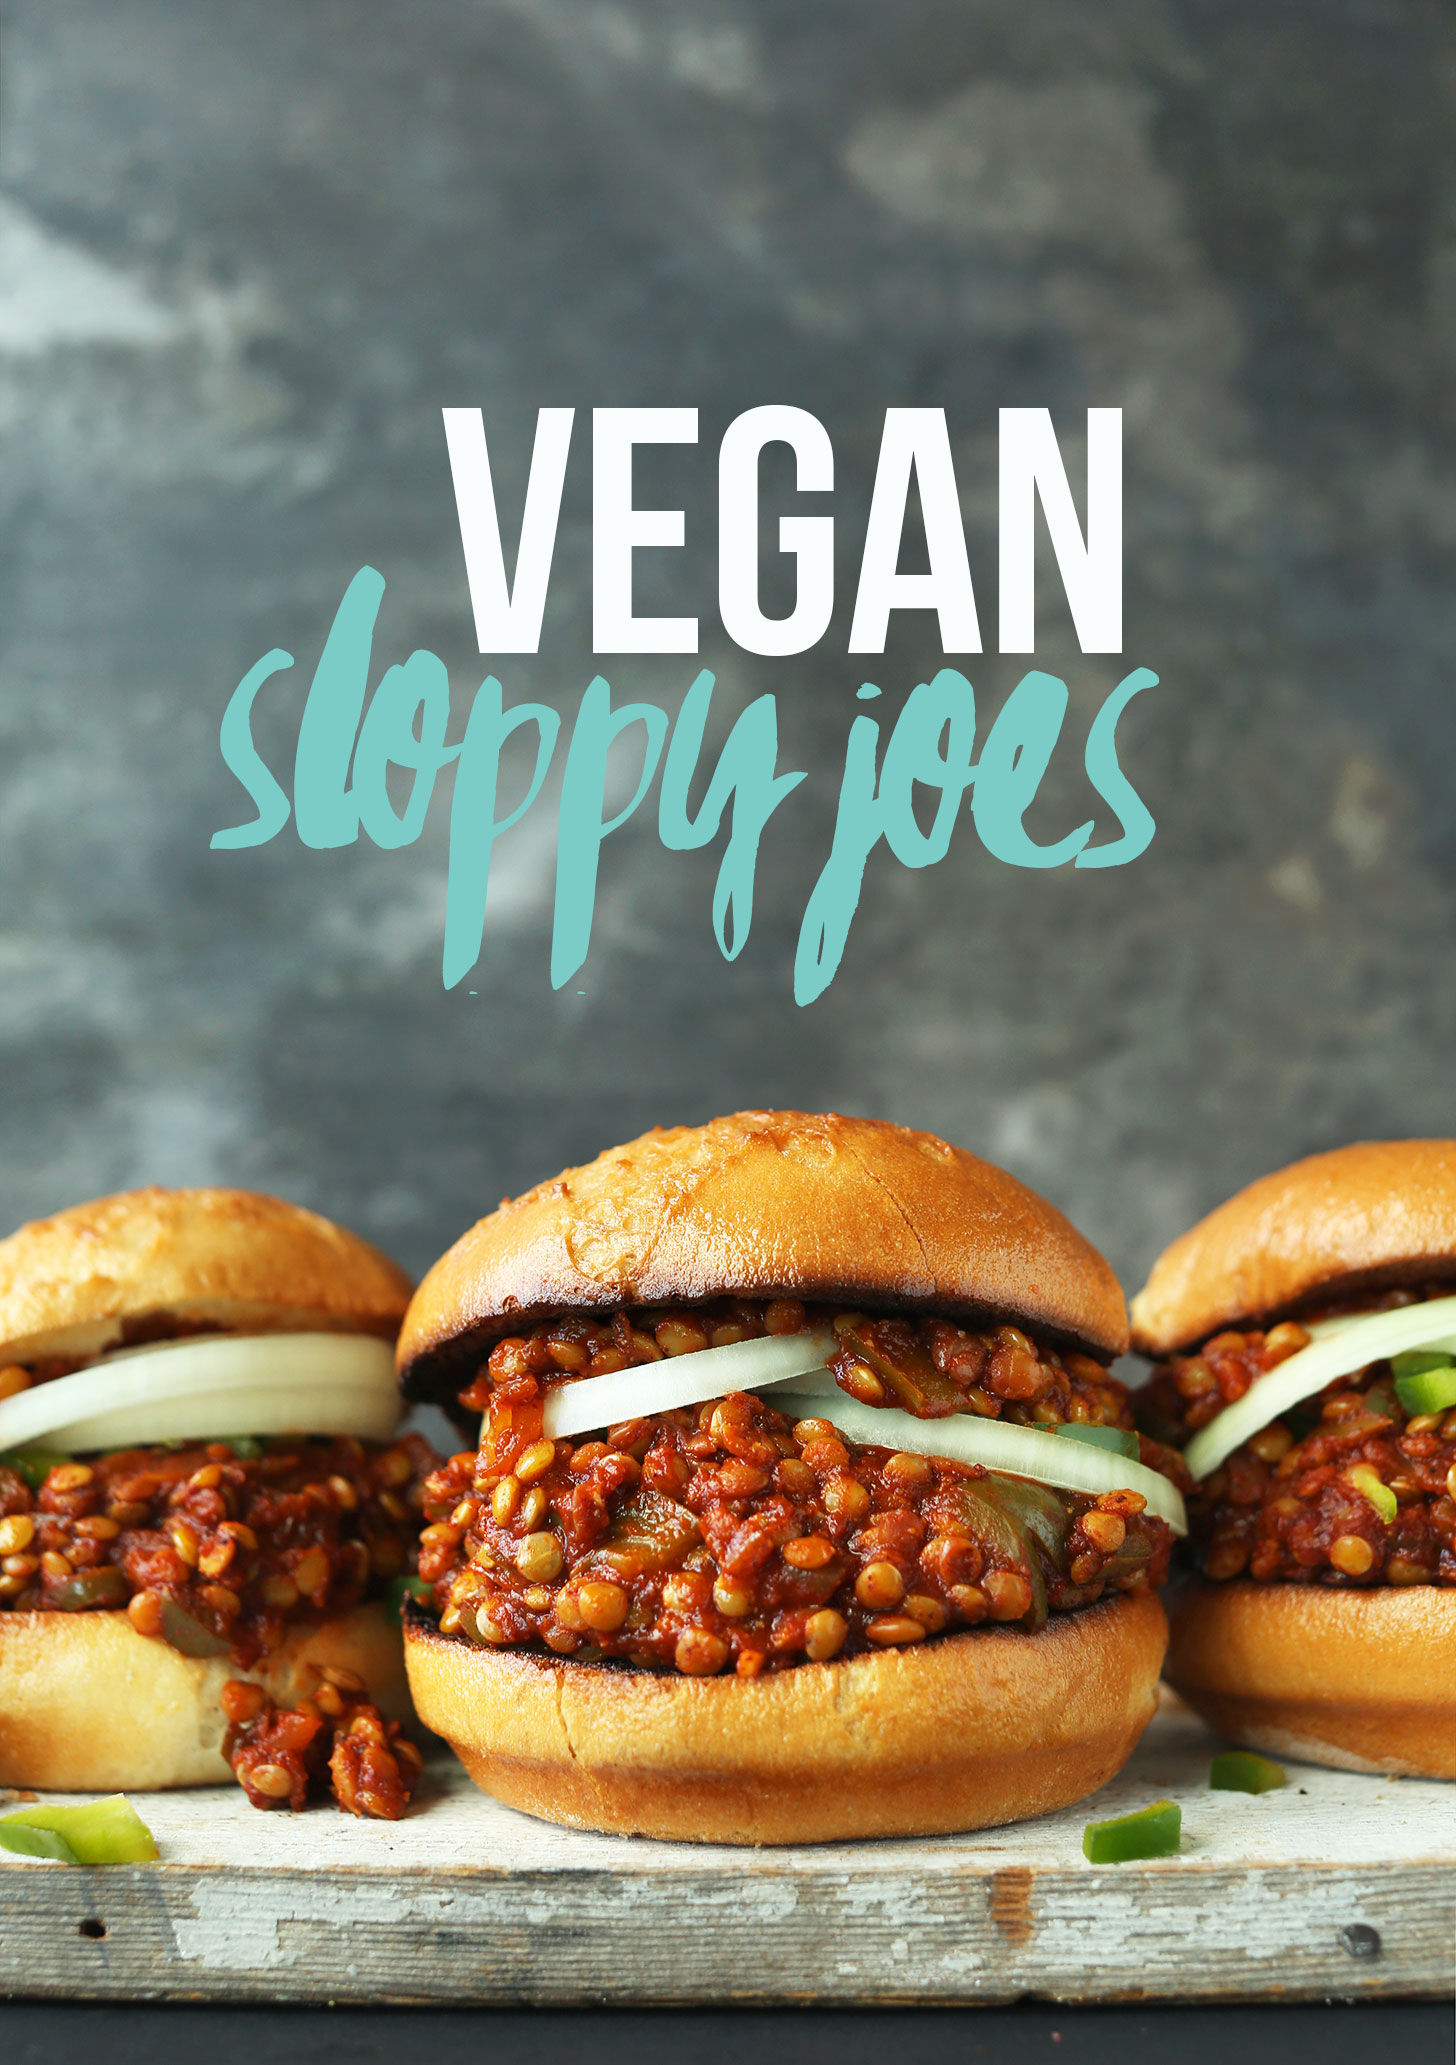 Buns filled with Vegan Lentil Sloppy Joes for an easy gluten-free plant-based dinner